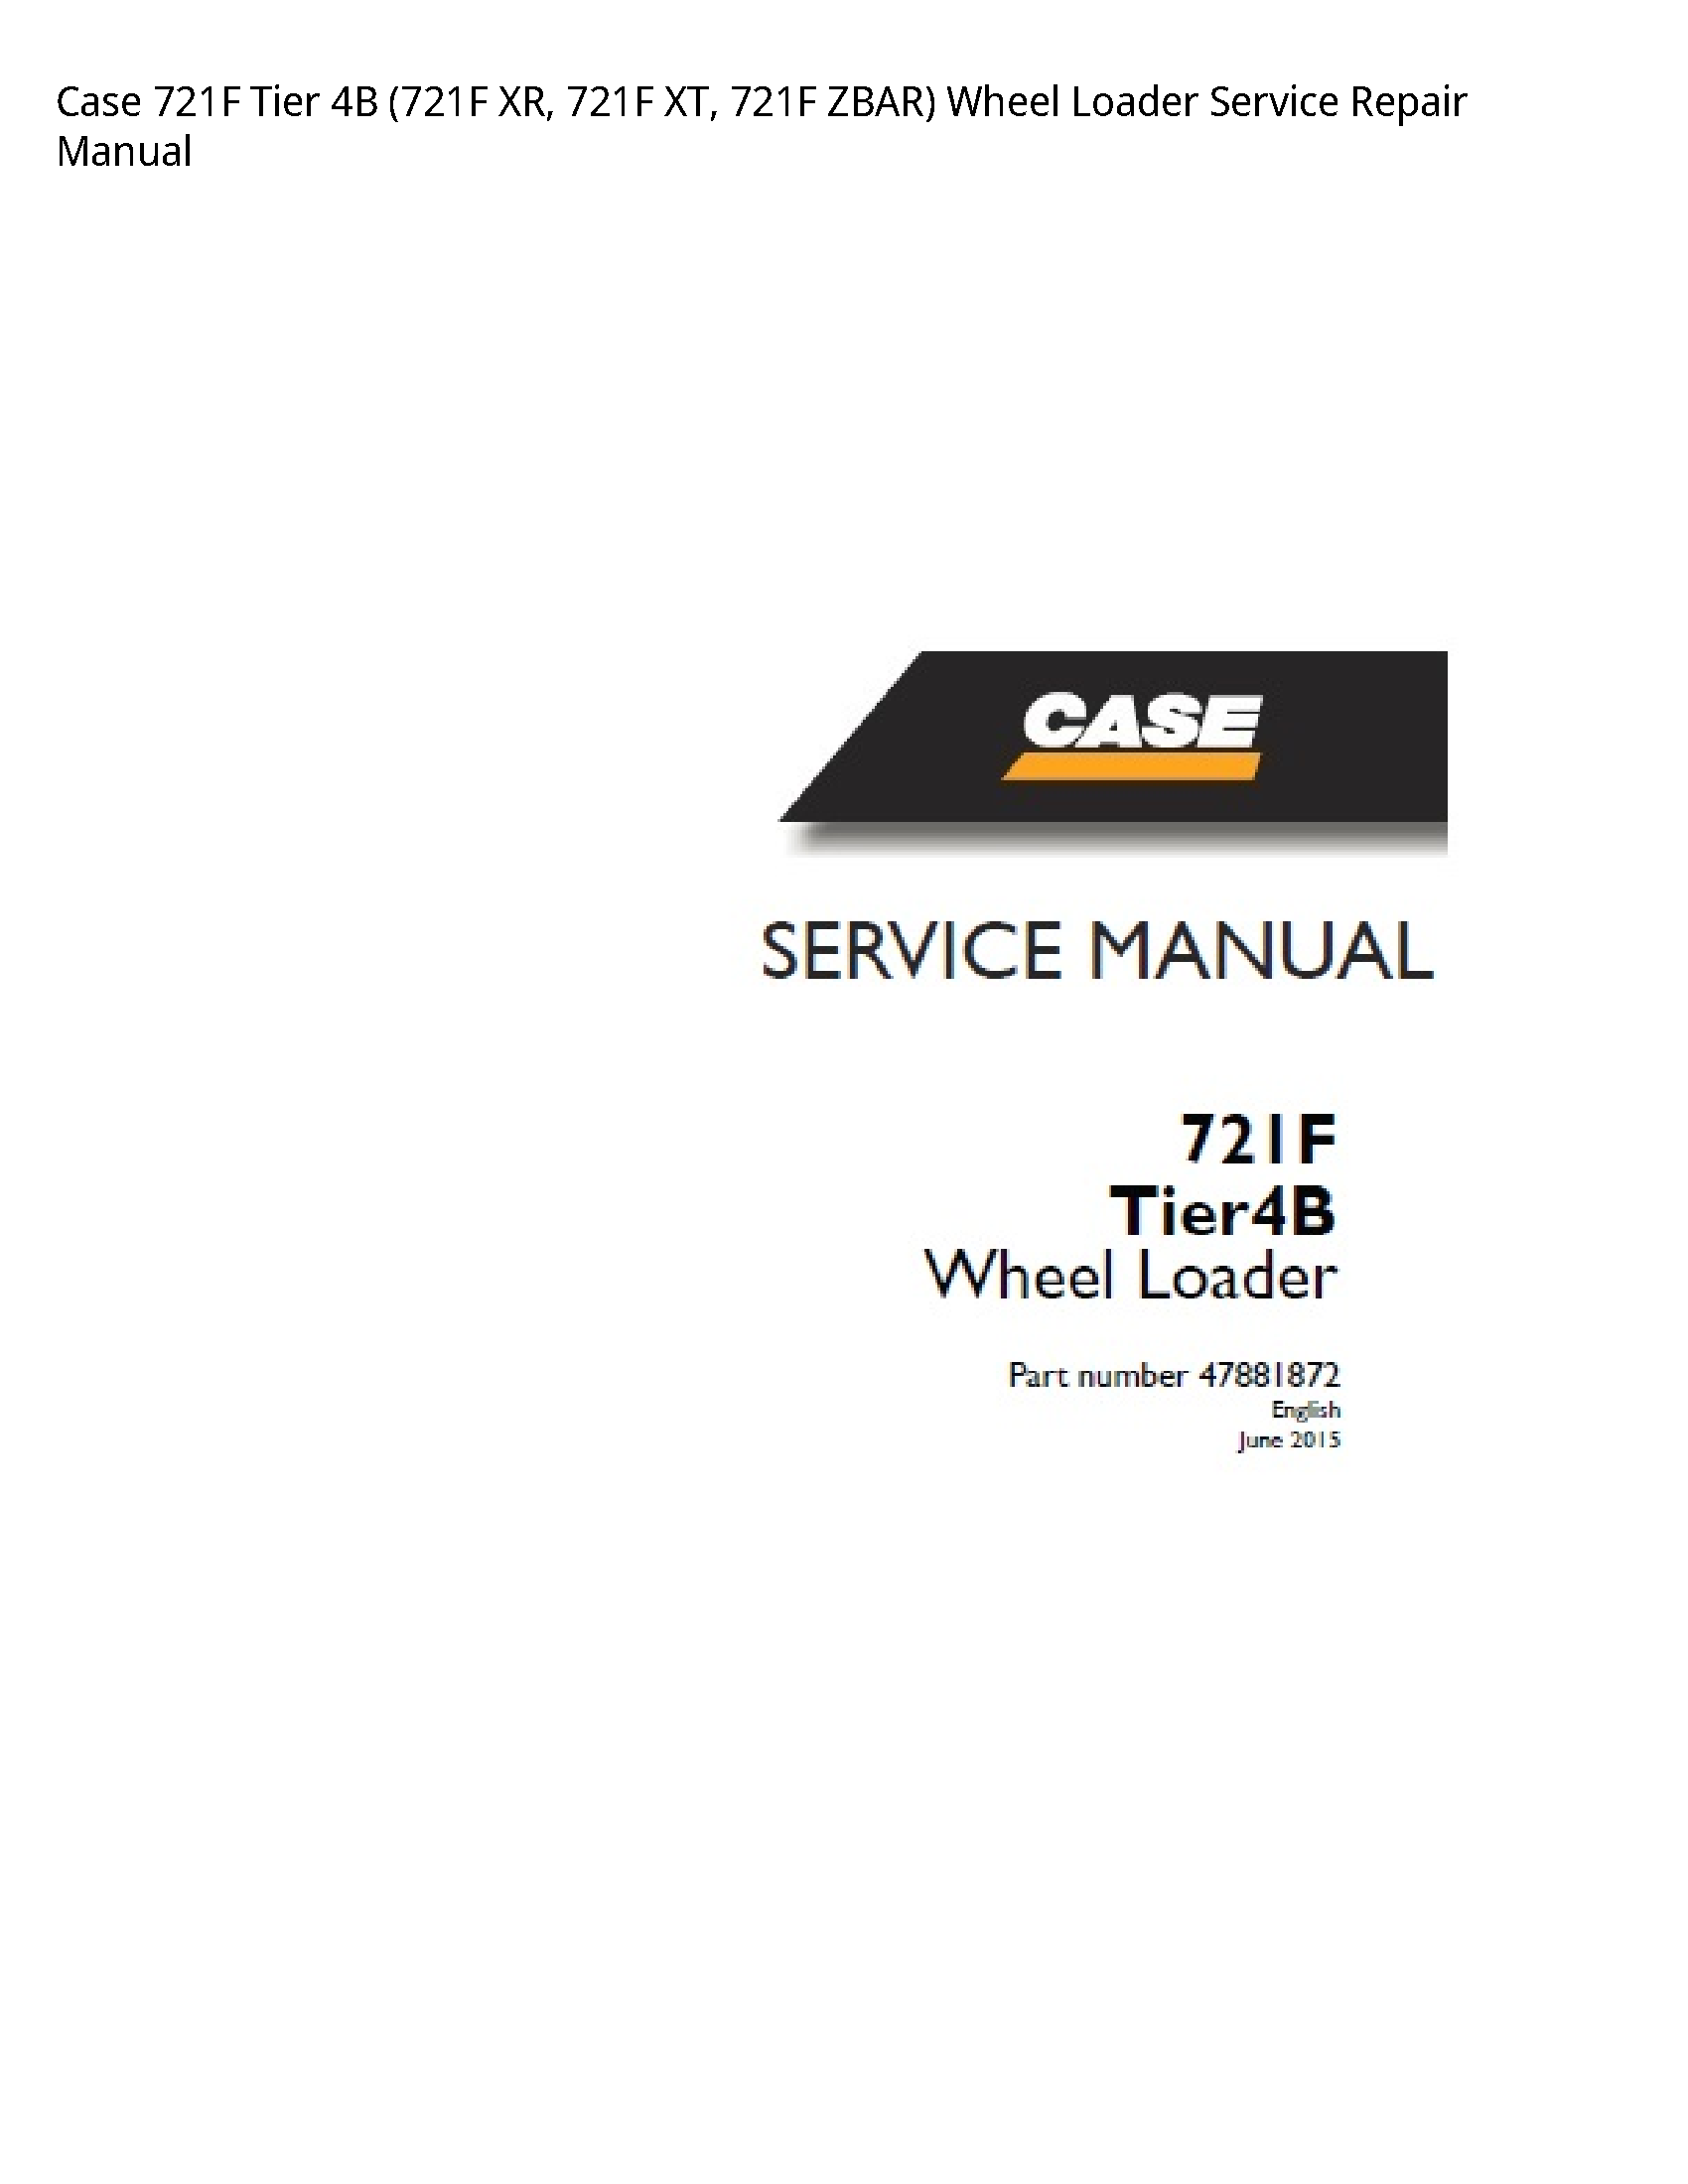 Case/Case IH 721F Tier XR manual